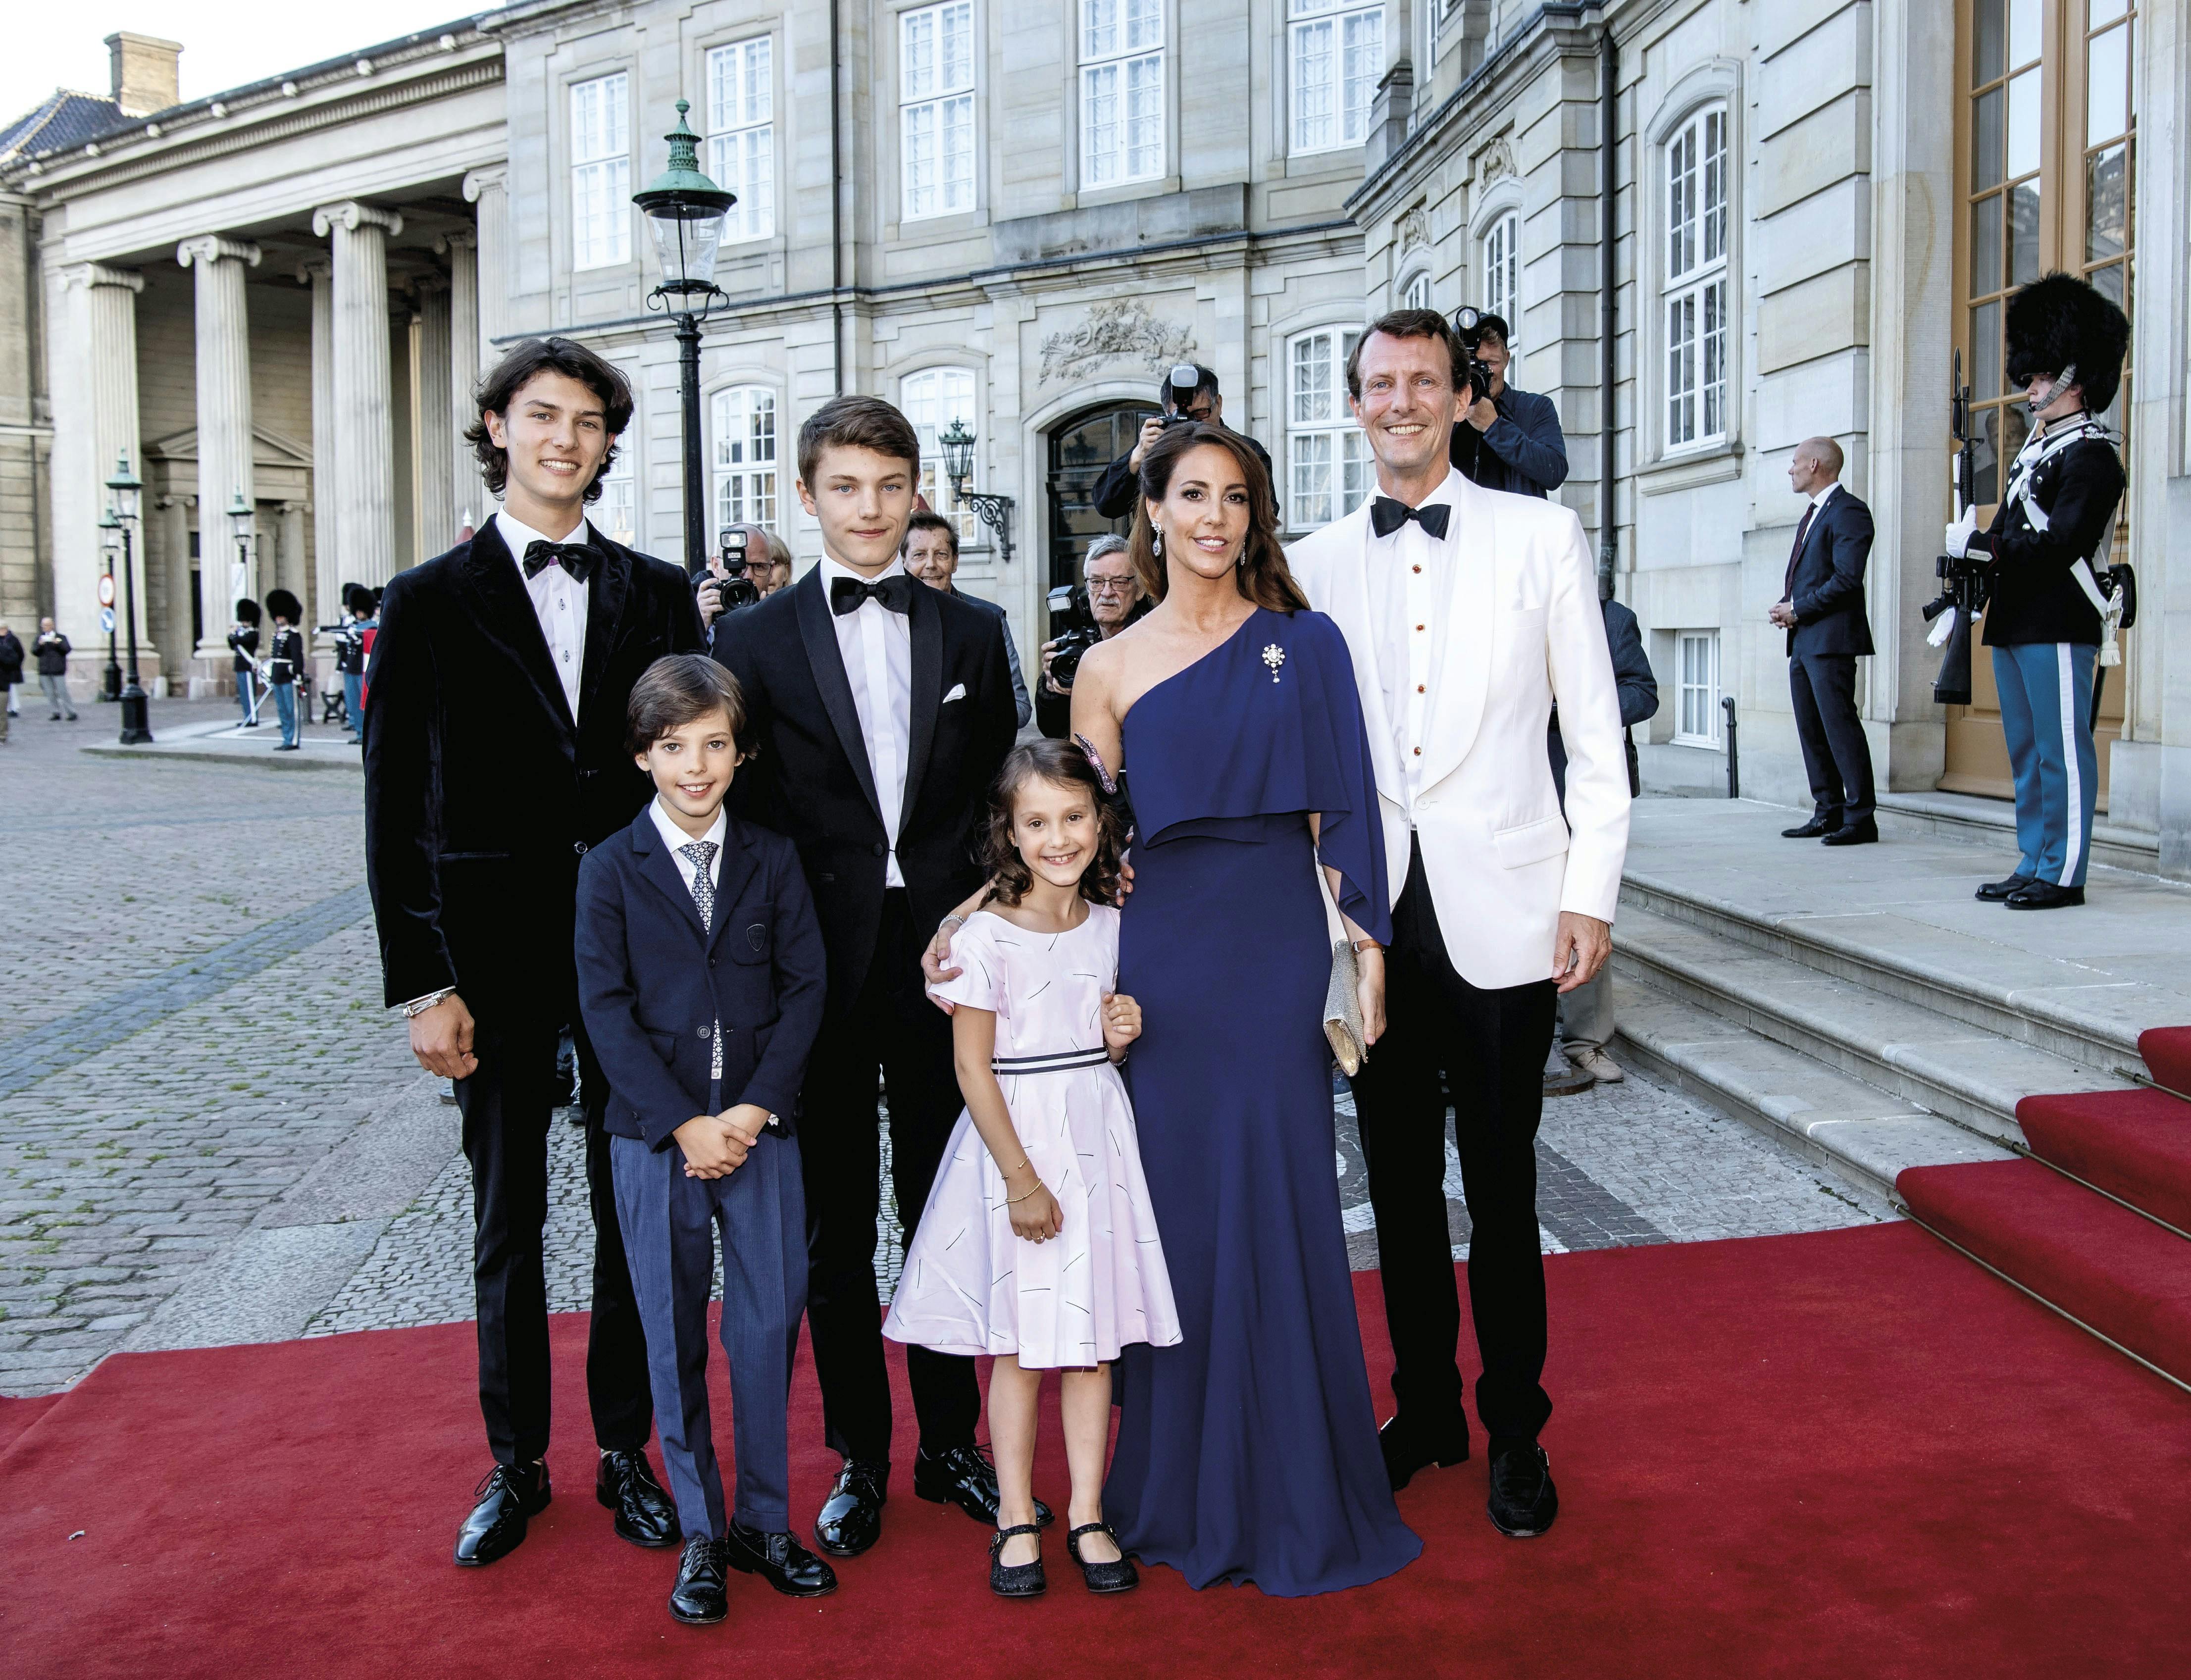 Prins Joachim med familien